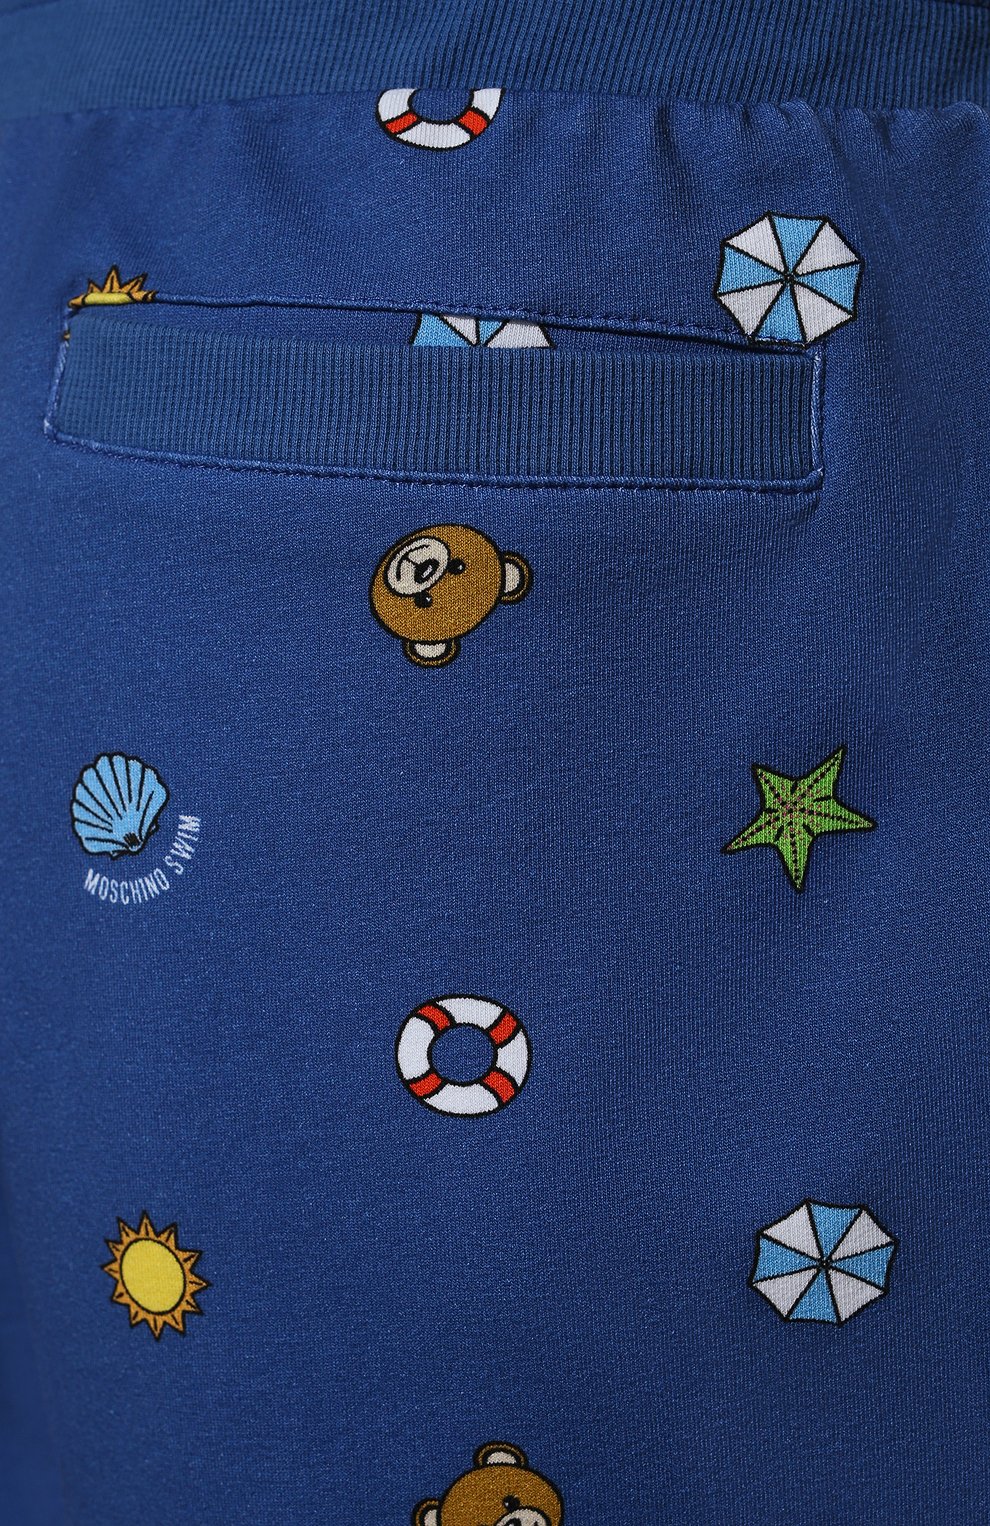 Мужские хлопковые шорты MOSCHINO синего цвета, арт. A6712/2330 | Фото 5 (Длина Шорты М: До колена; Случай: Повседневный; Стили: Гранж; Принт: С принтом; Материал внешний: Хлопок)